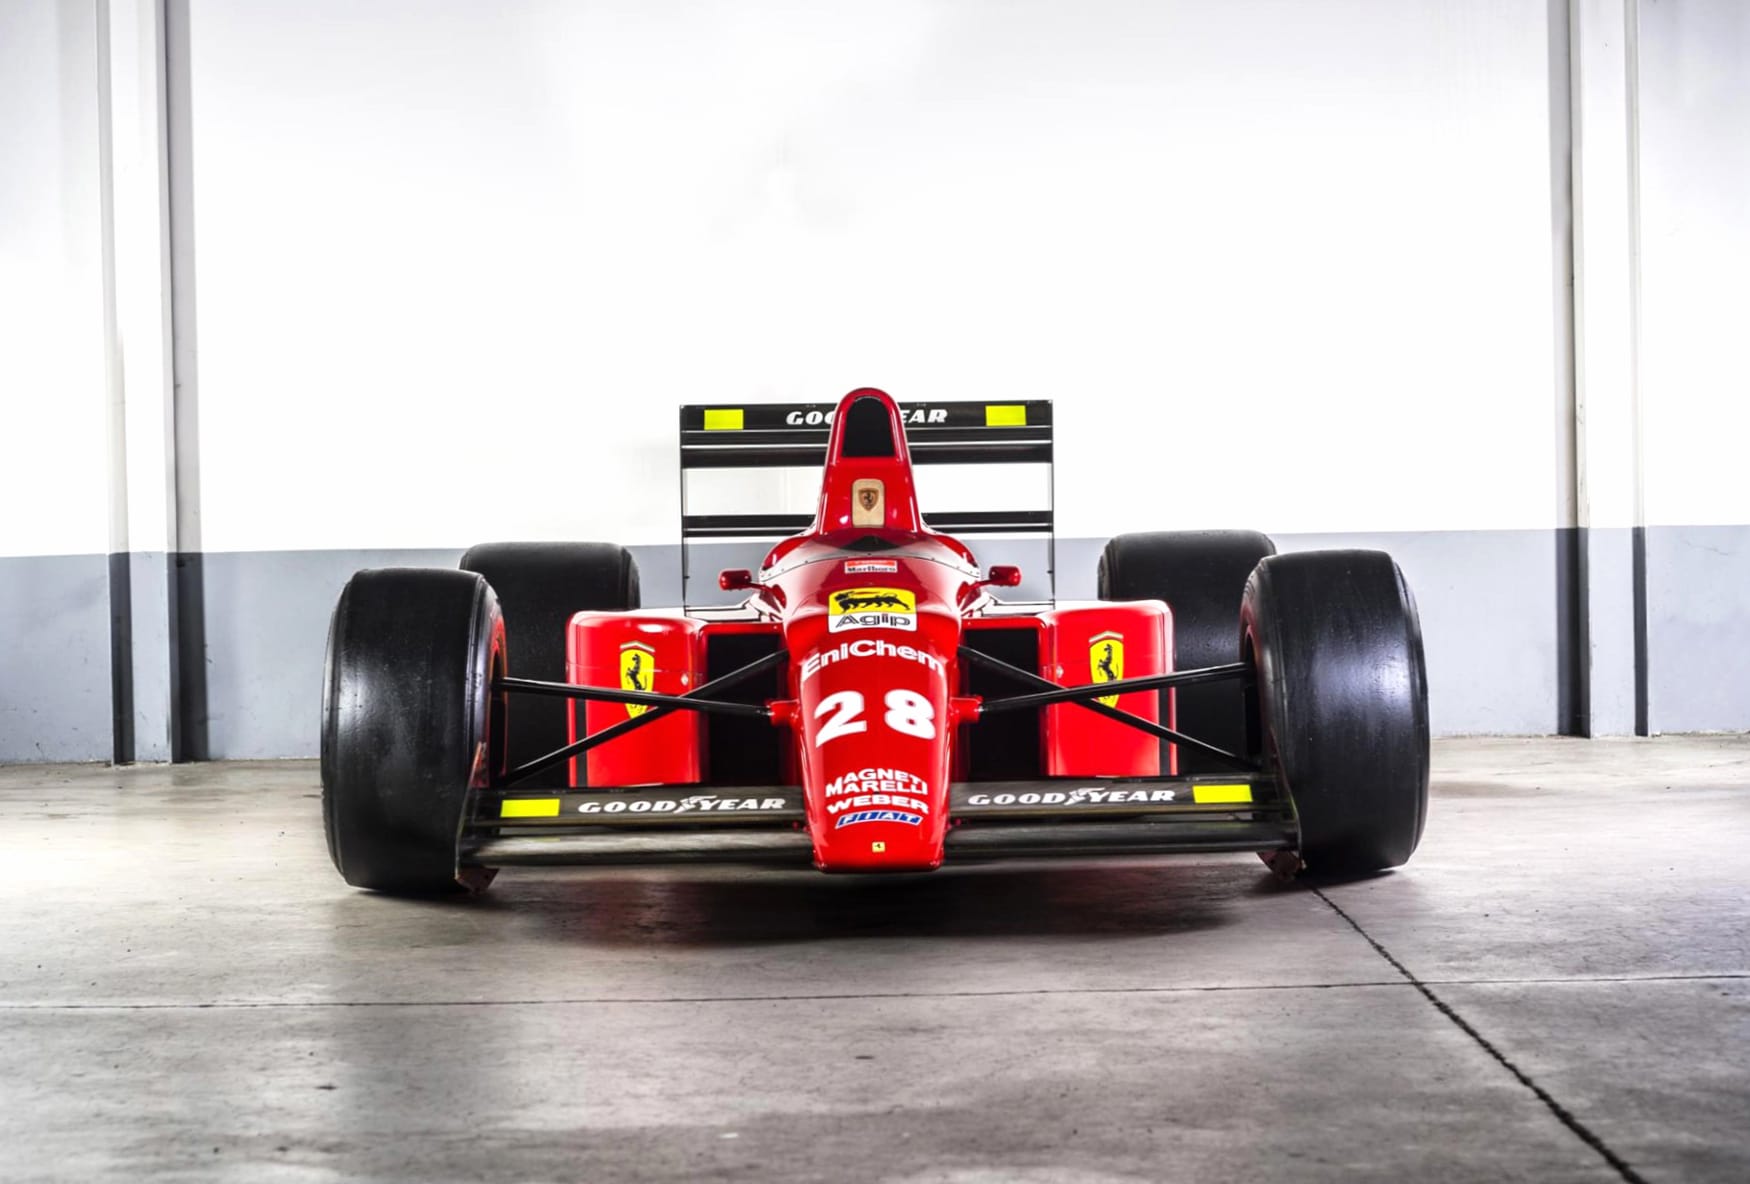 Ferrari F1-89 at 1600 x 1200 size wallpapers HD quality